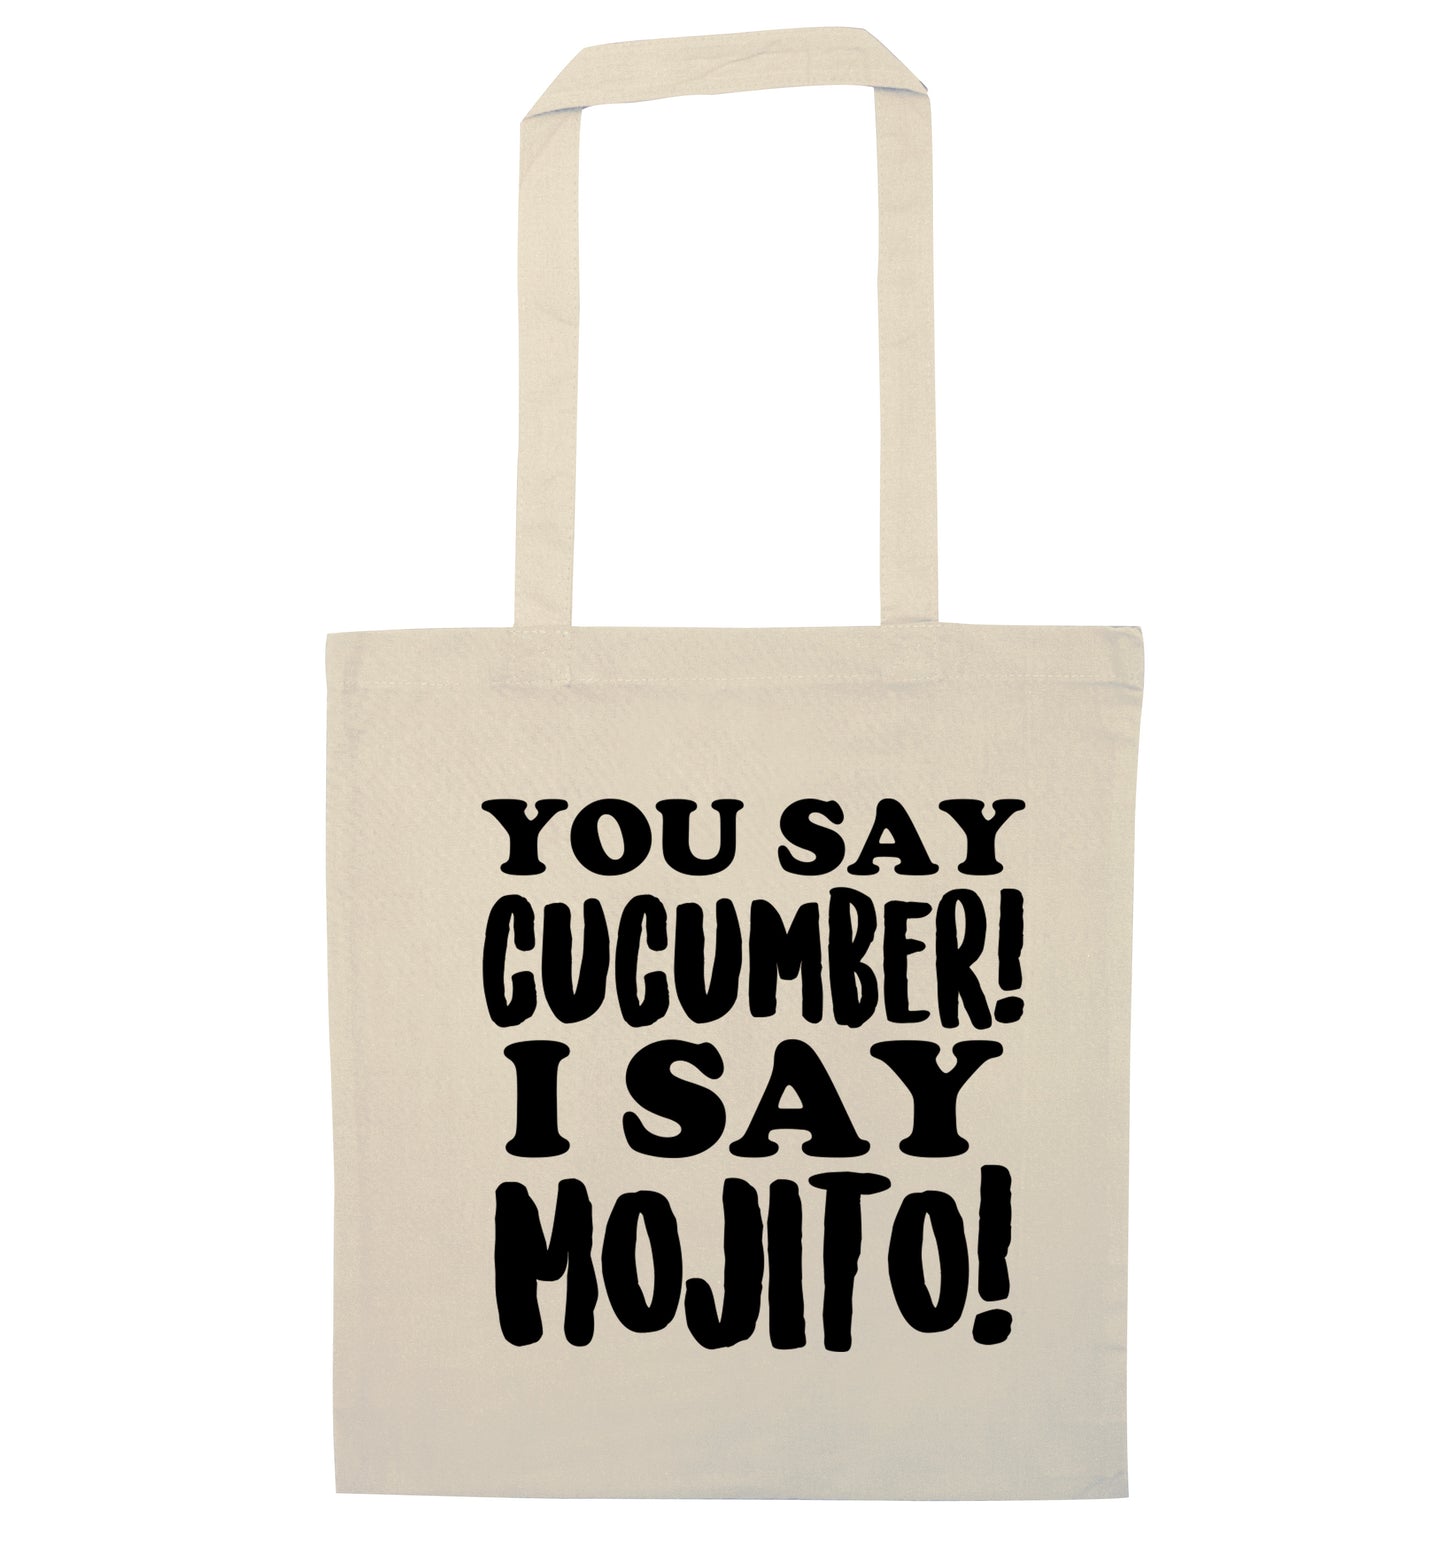 You say cucumber I say mojito! natural tote bag